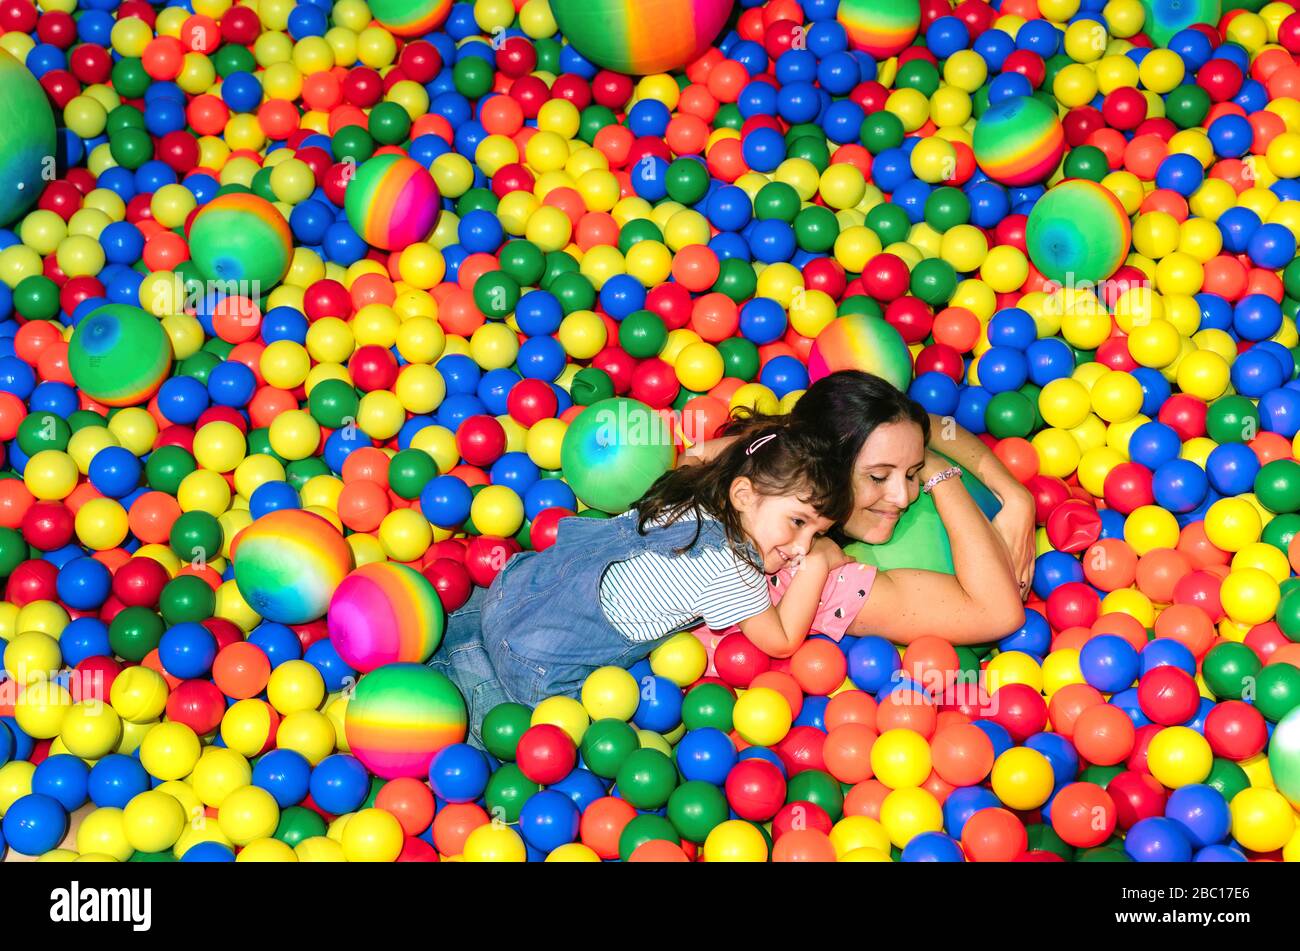 Mujer feliz acostada con su hija pequeña entre muchas bolas coloridas Foto de stock